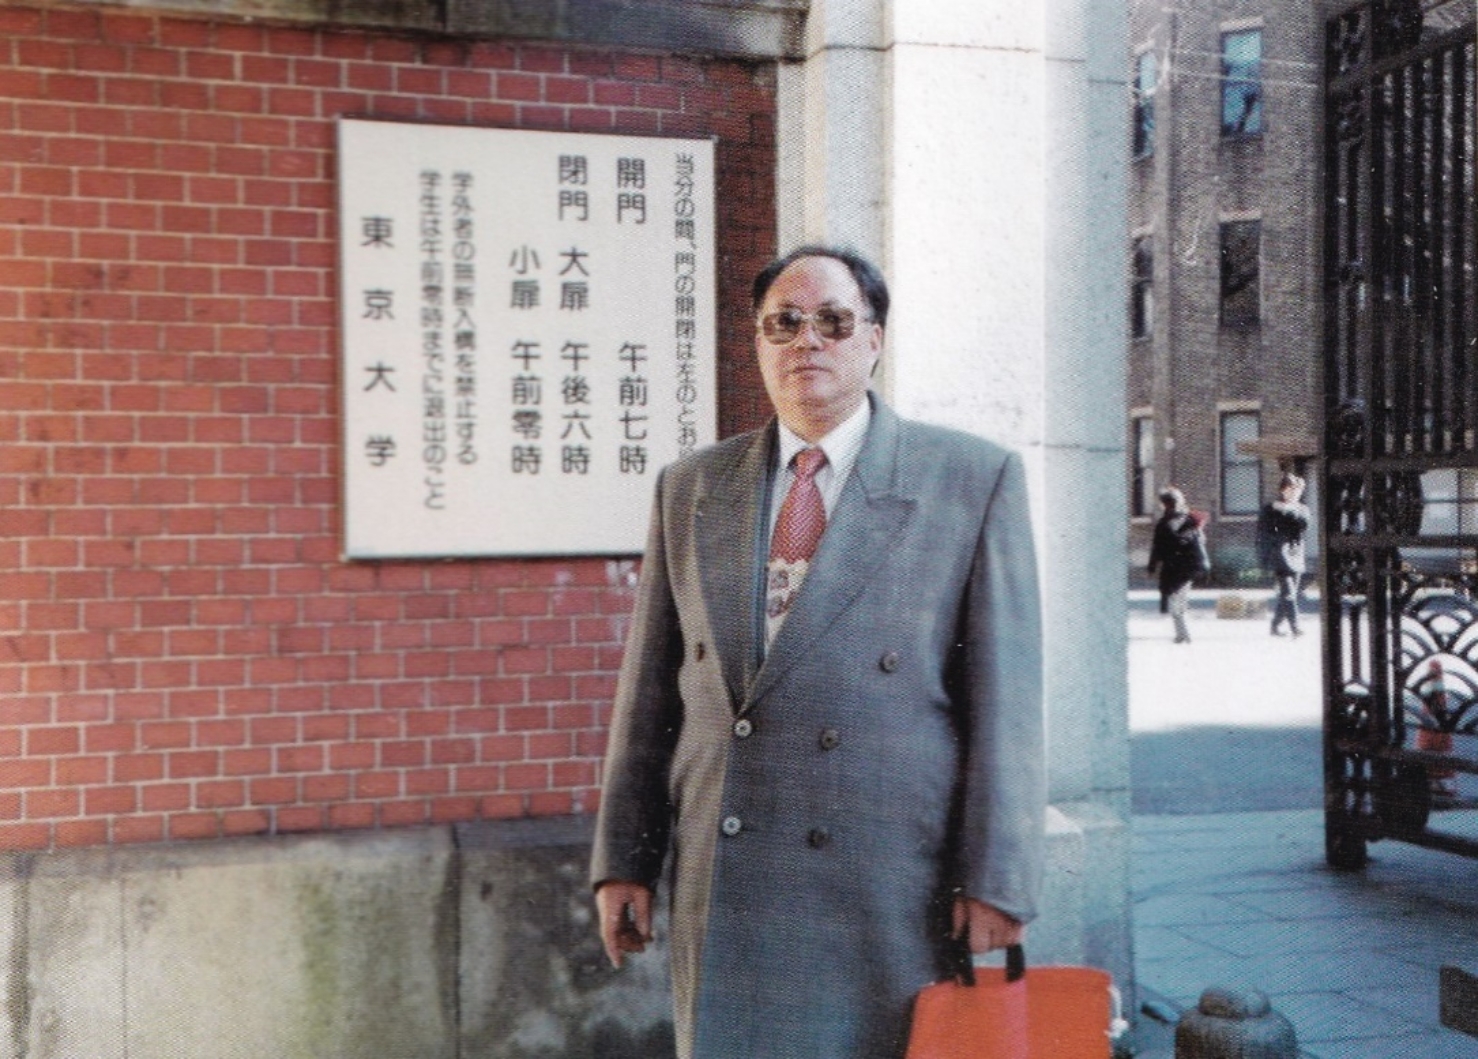 E:\221107\谢庆奎老师后事\谢庆奎老师纪念专栏\四、谢庆奎珍贵照片\1999年1月，在日本东京大学的校门口。.jpg